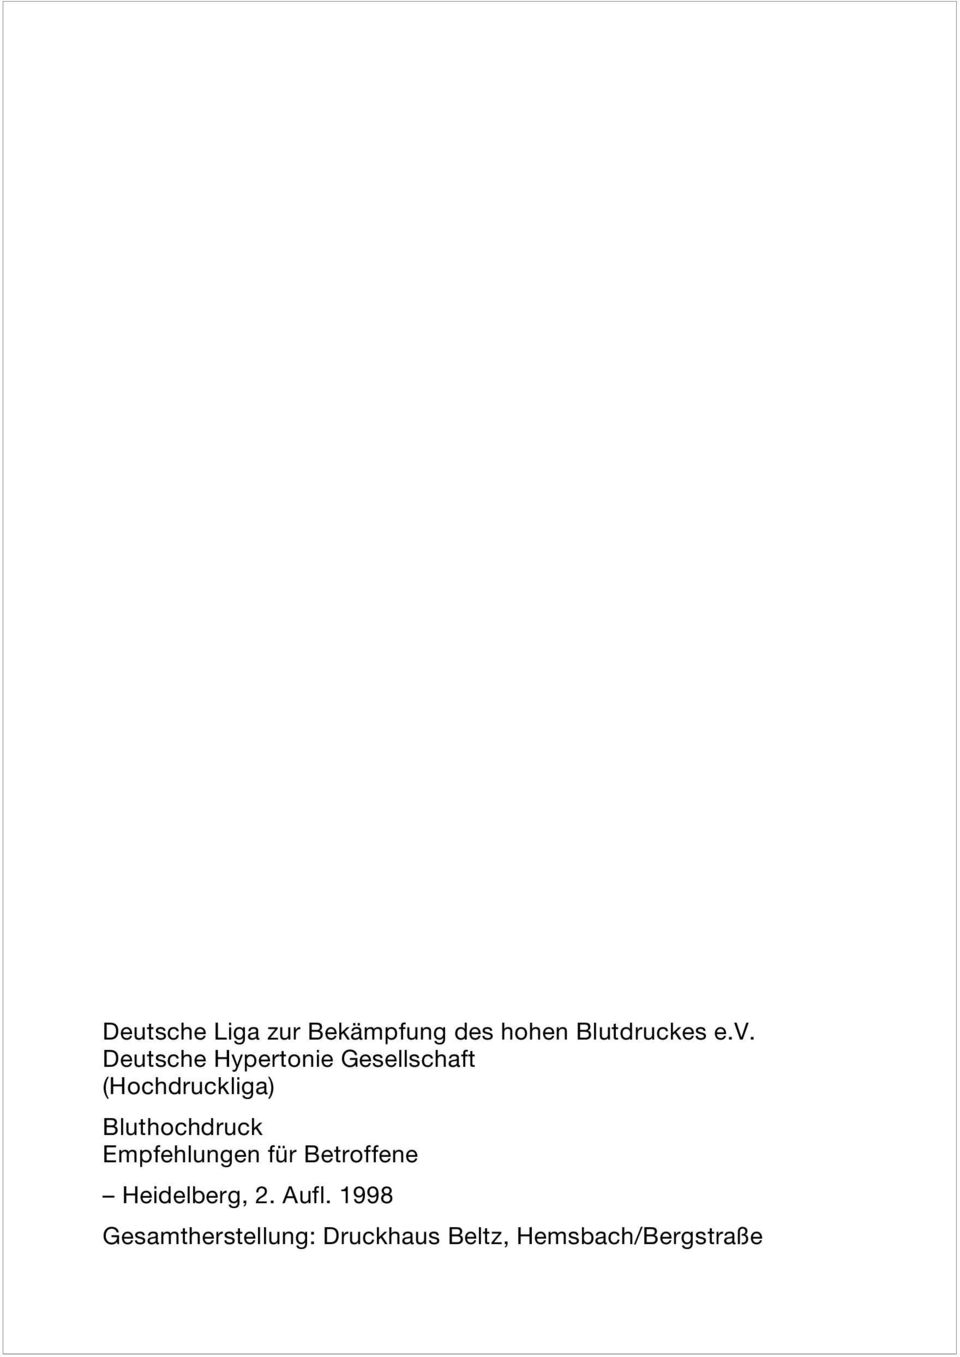 Bluthochdruck Empfehlungen für Betroffene Heidelberg, 2.